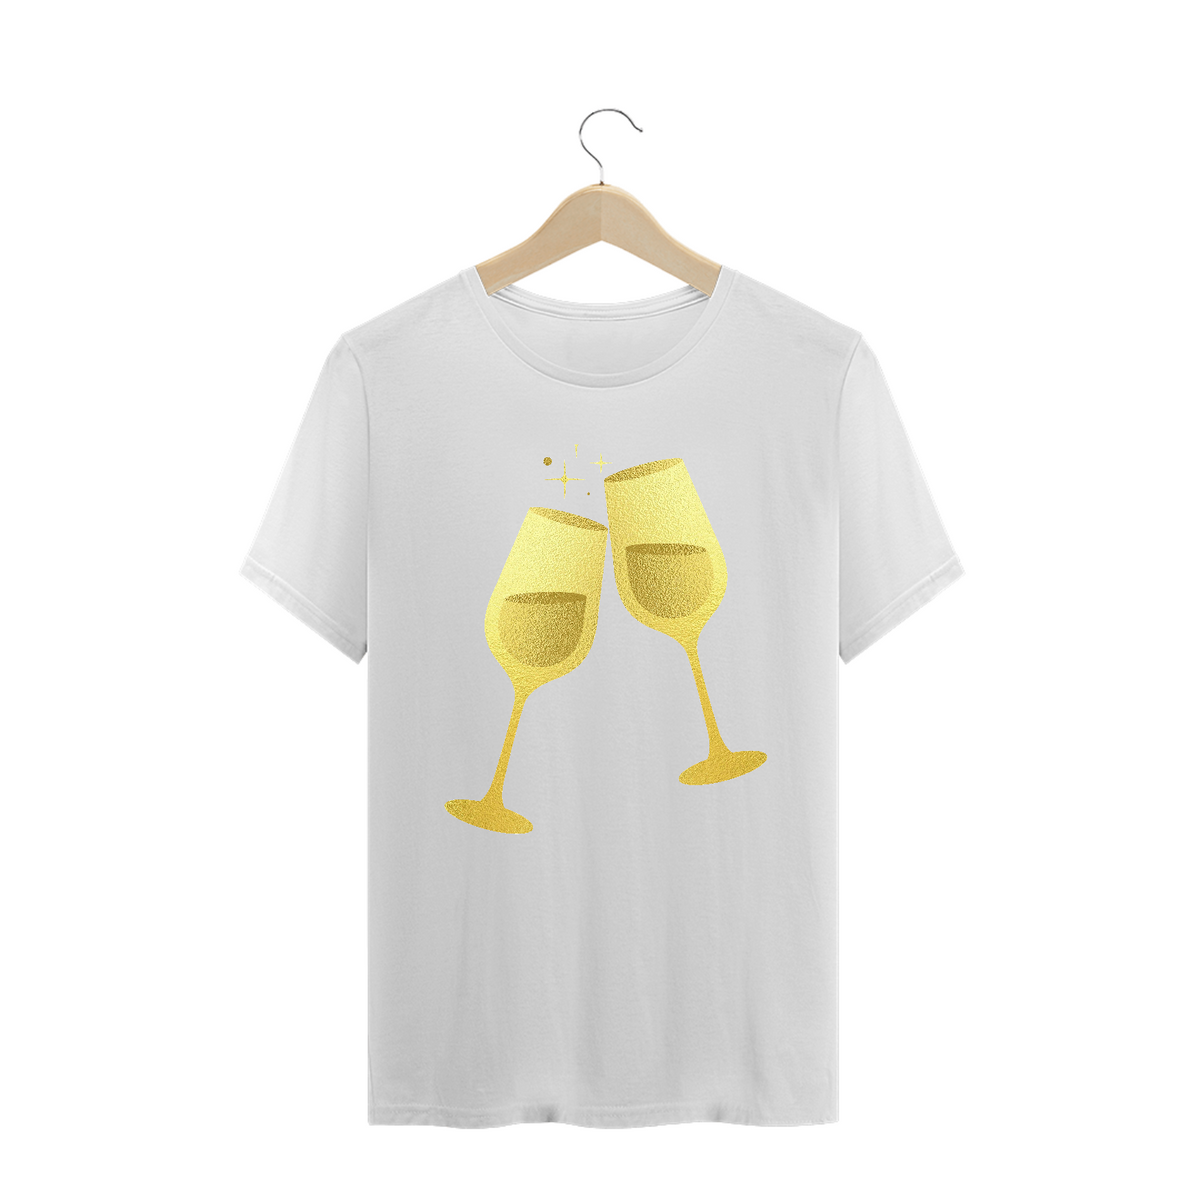 Nome do produto: Camiseta Símbolo Taças Douradas